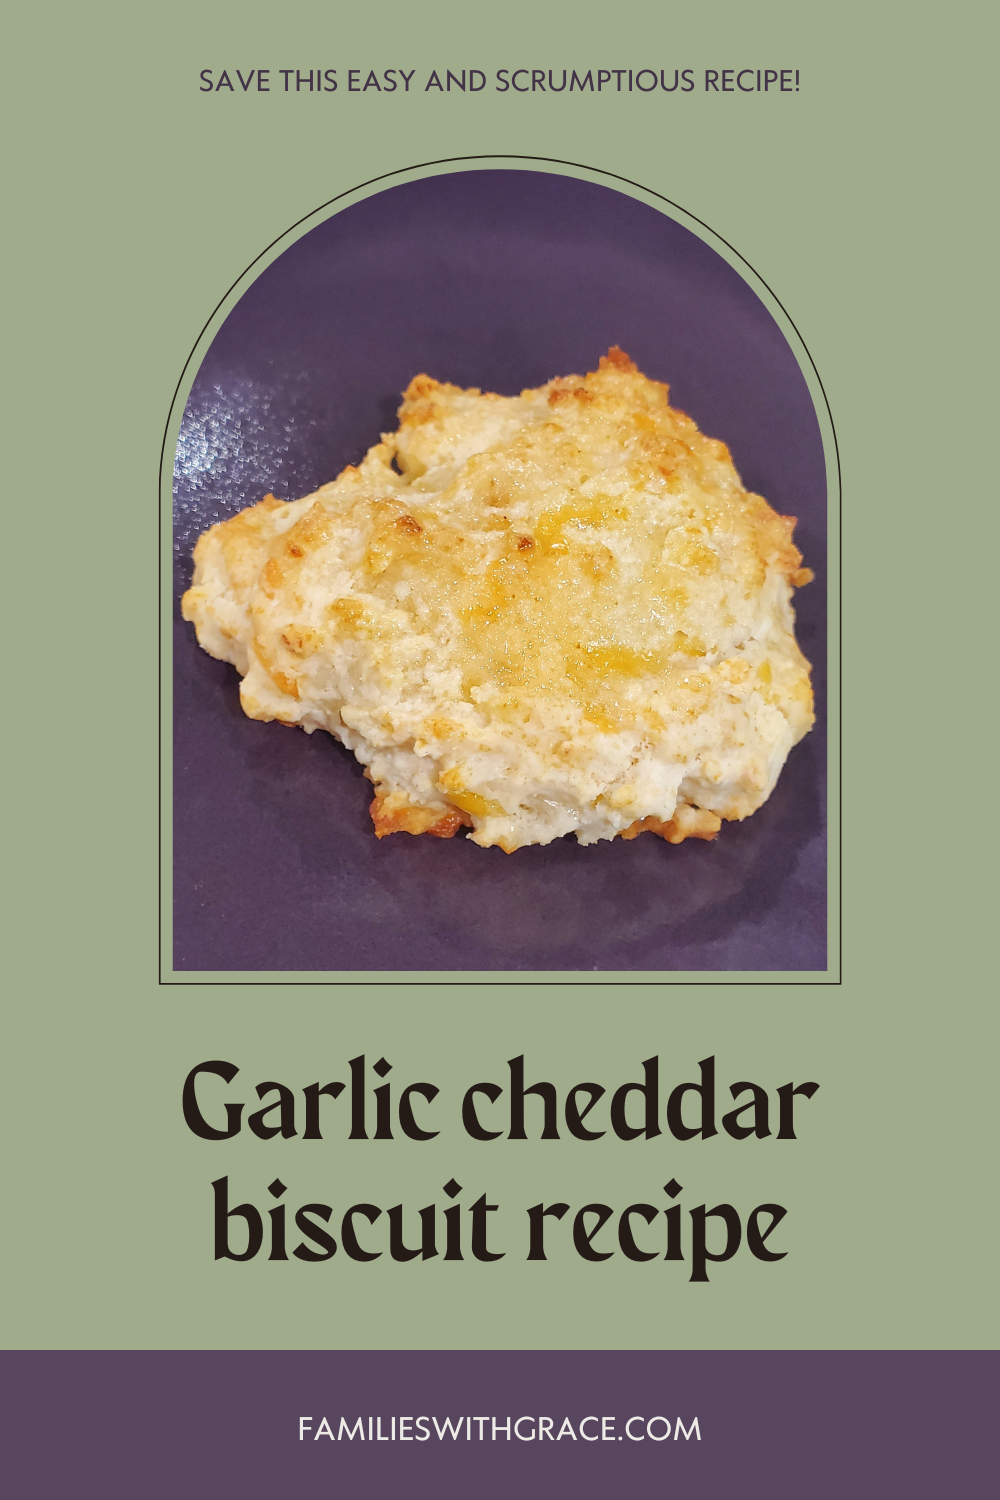 Garlic cheddar biscuits